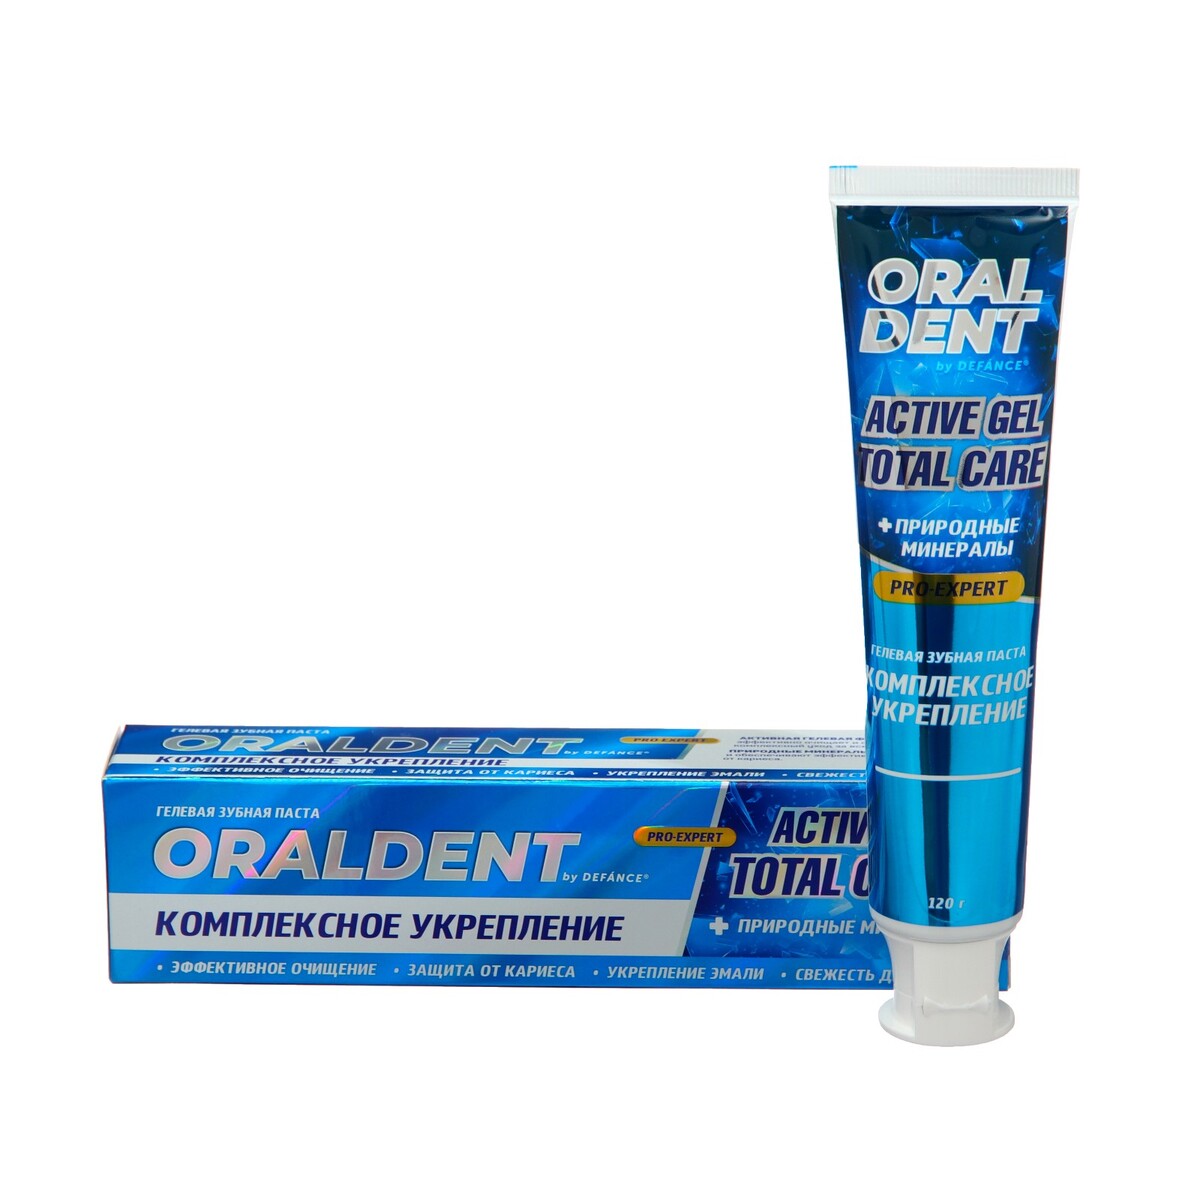   defance oraldent active gel,  , 120 